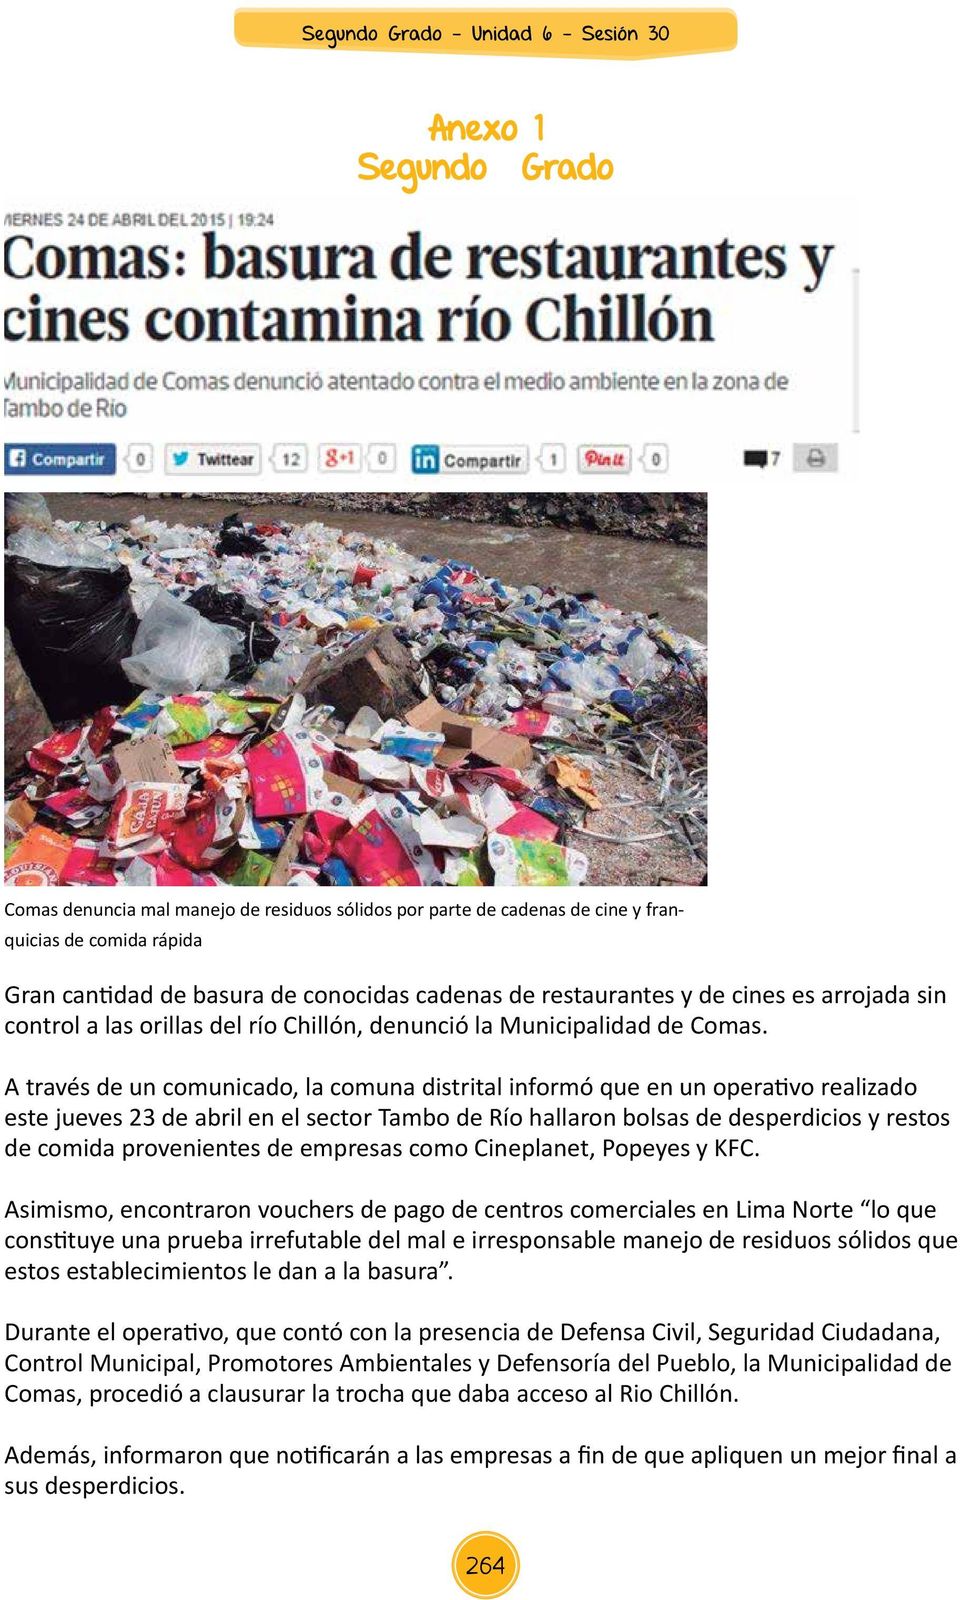 A través de un comunicado, la comuna distrital informó que en un operativo realizado este jueves 23 de abril en el sector Tambo de Río hallaron bolsas de desperdicios y restos de comida provenientes